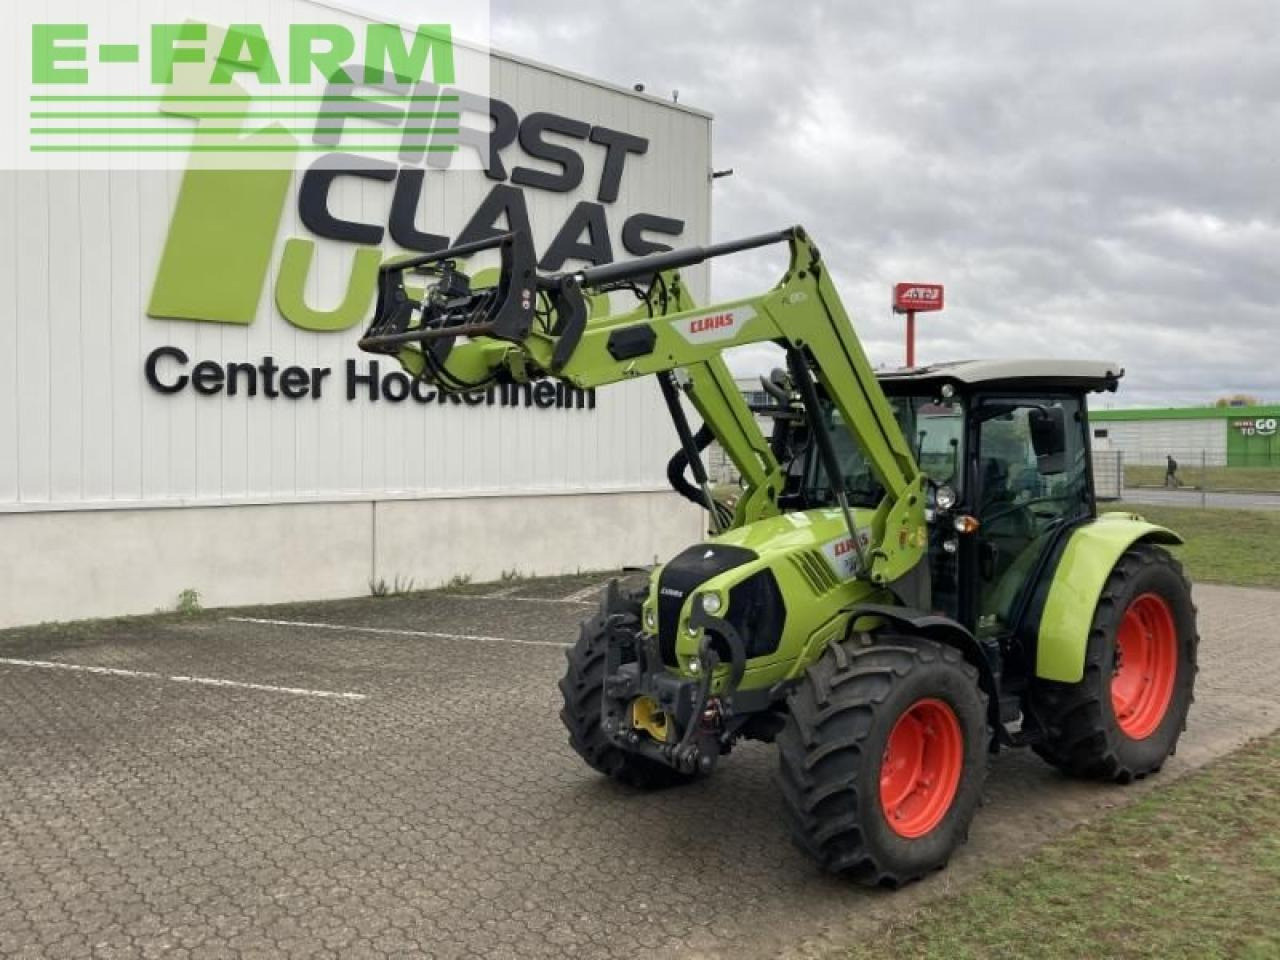 Farm tractor CLAAS atos 330 stage iiib t2